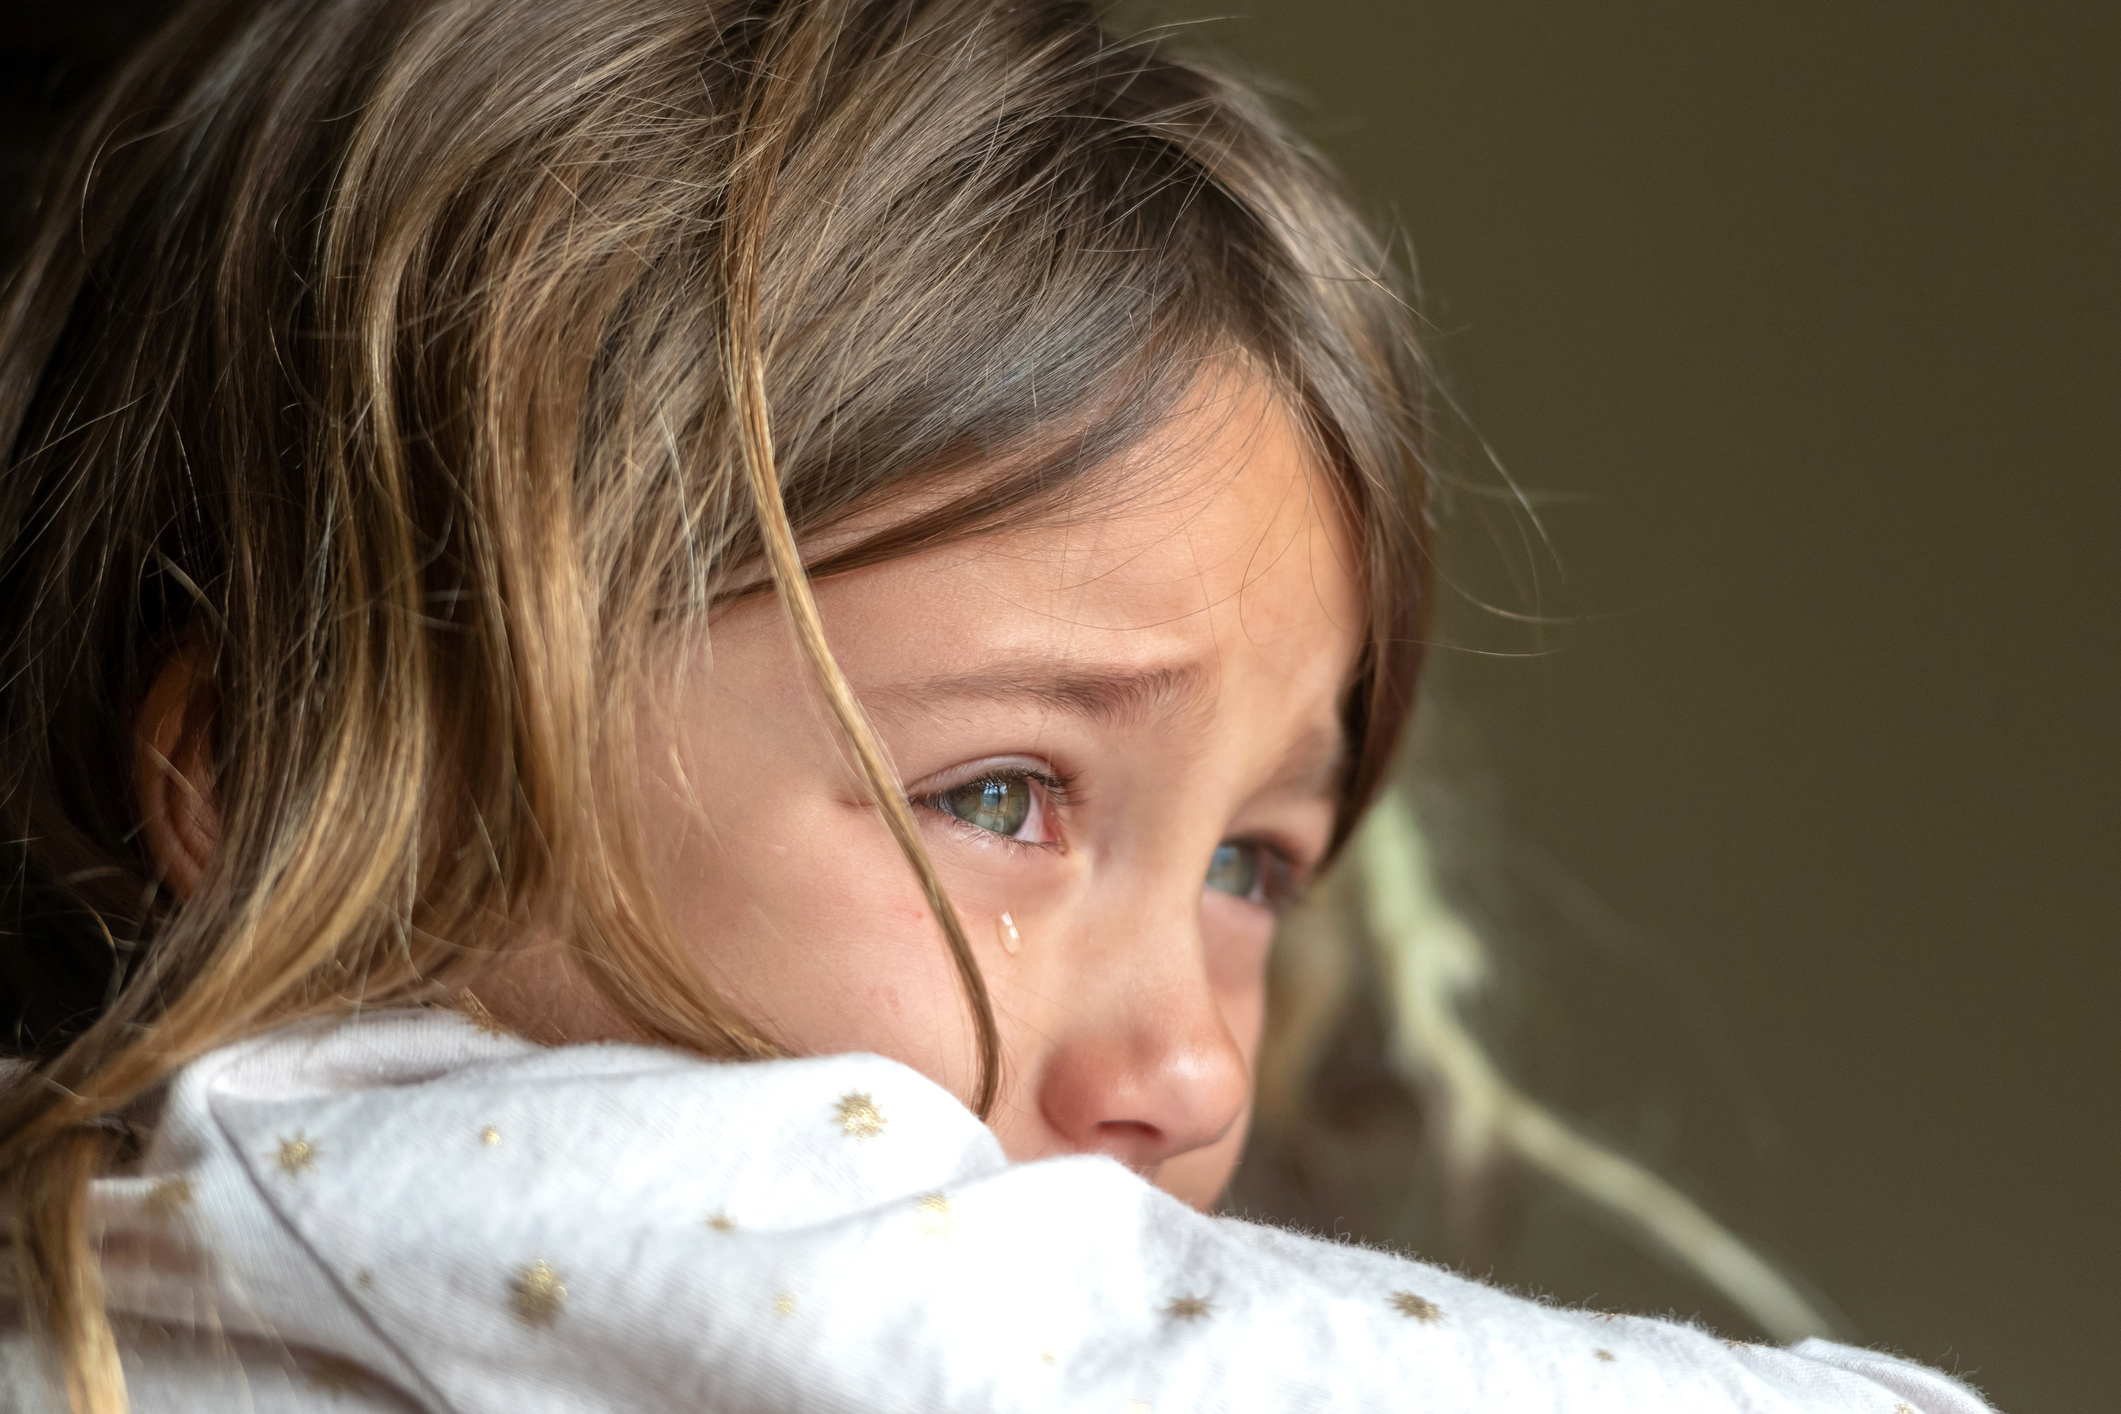 Фото №1 - Фото ребенка, чудом выжившего при взрыве в Ногинске, поразило Интернет